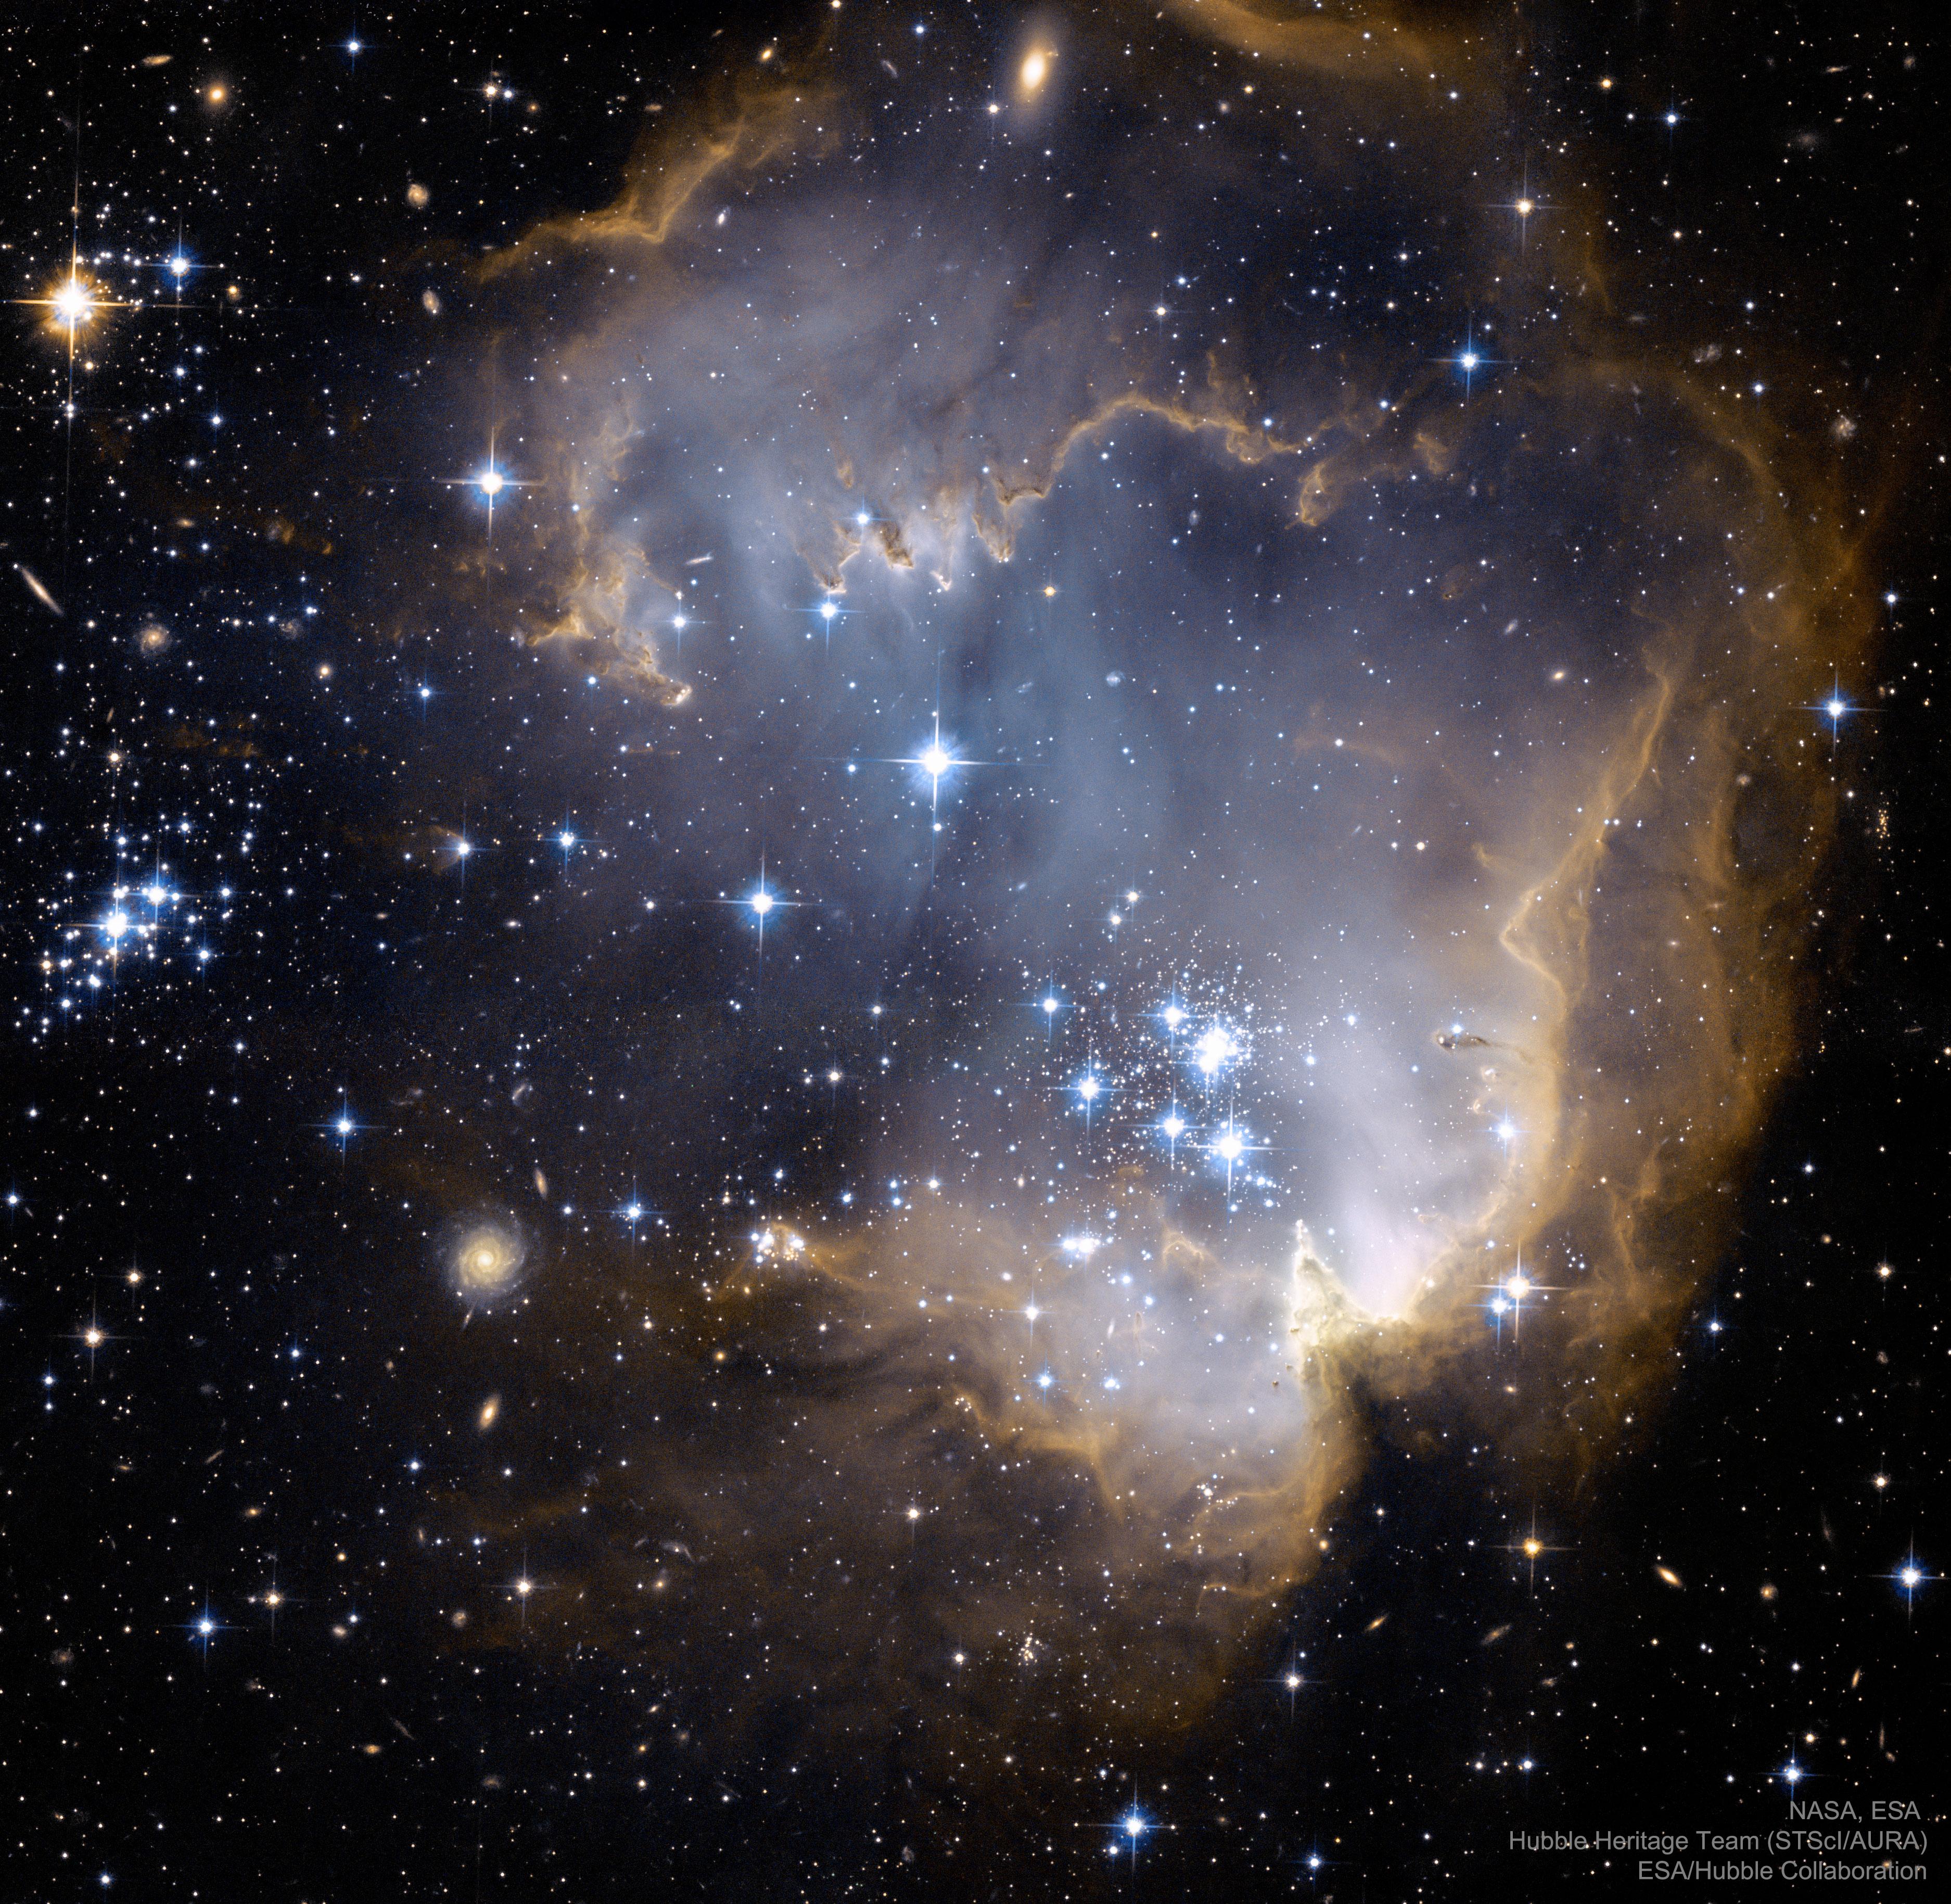 صورة للفضاء العميق تظهر جزءاً من سحابة سديميّة في داخلها نجوم حيث تبدو كأنها محارة وفيها لآلئ. تظهر في الصورة العديد من النجوم متفاوتة الحجم إضافة إلى عدد من المجرّات البعيدة في الخلفيّة.